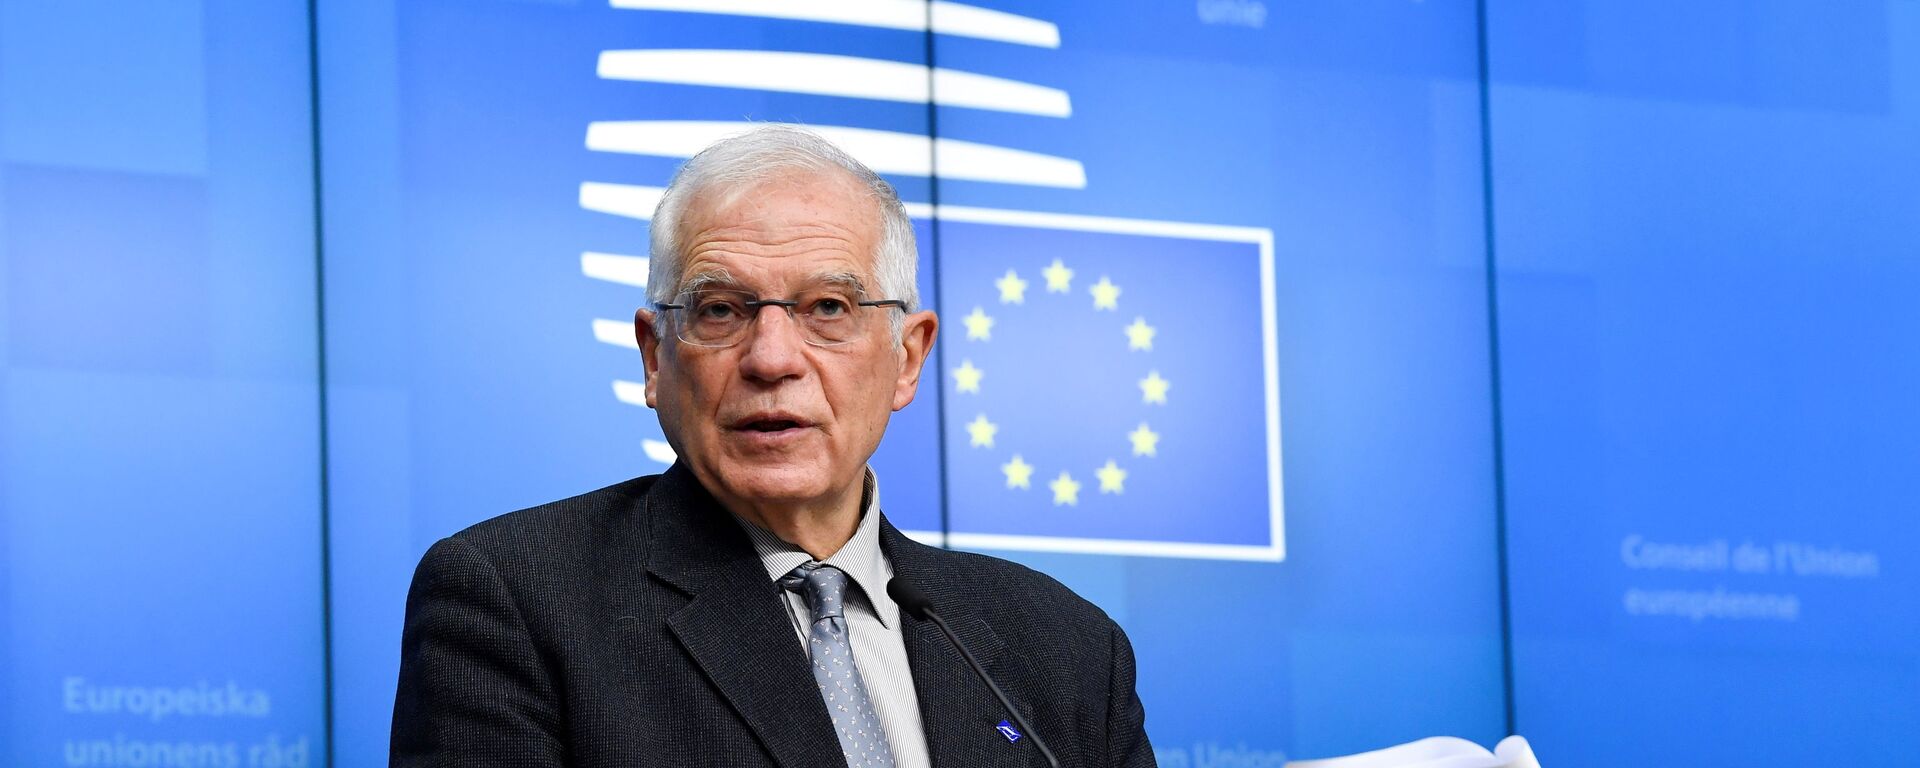 Josep Borrell, alto representante para la Política Exterior de la UE - Sputnik Mundo, 1920, 22.05.2021